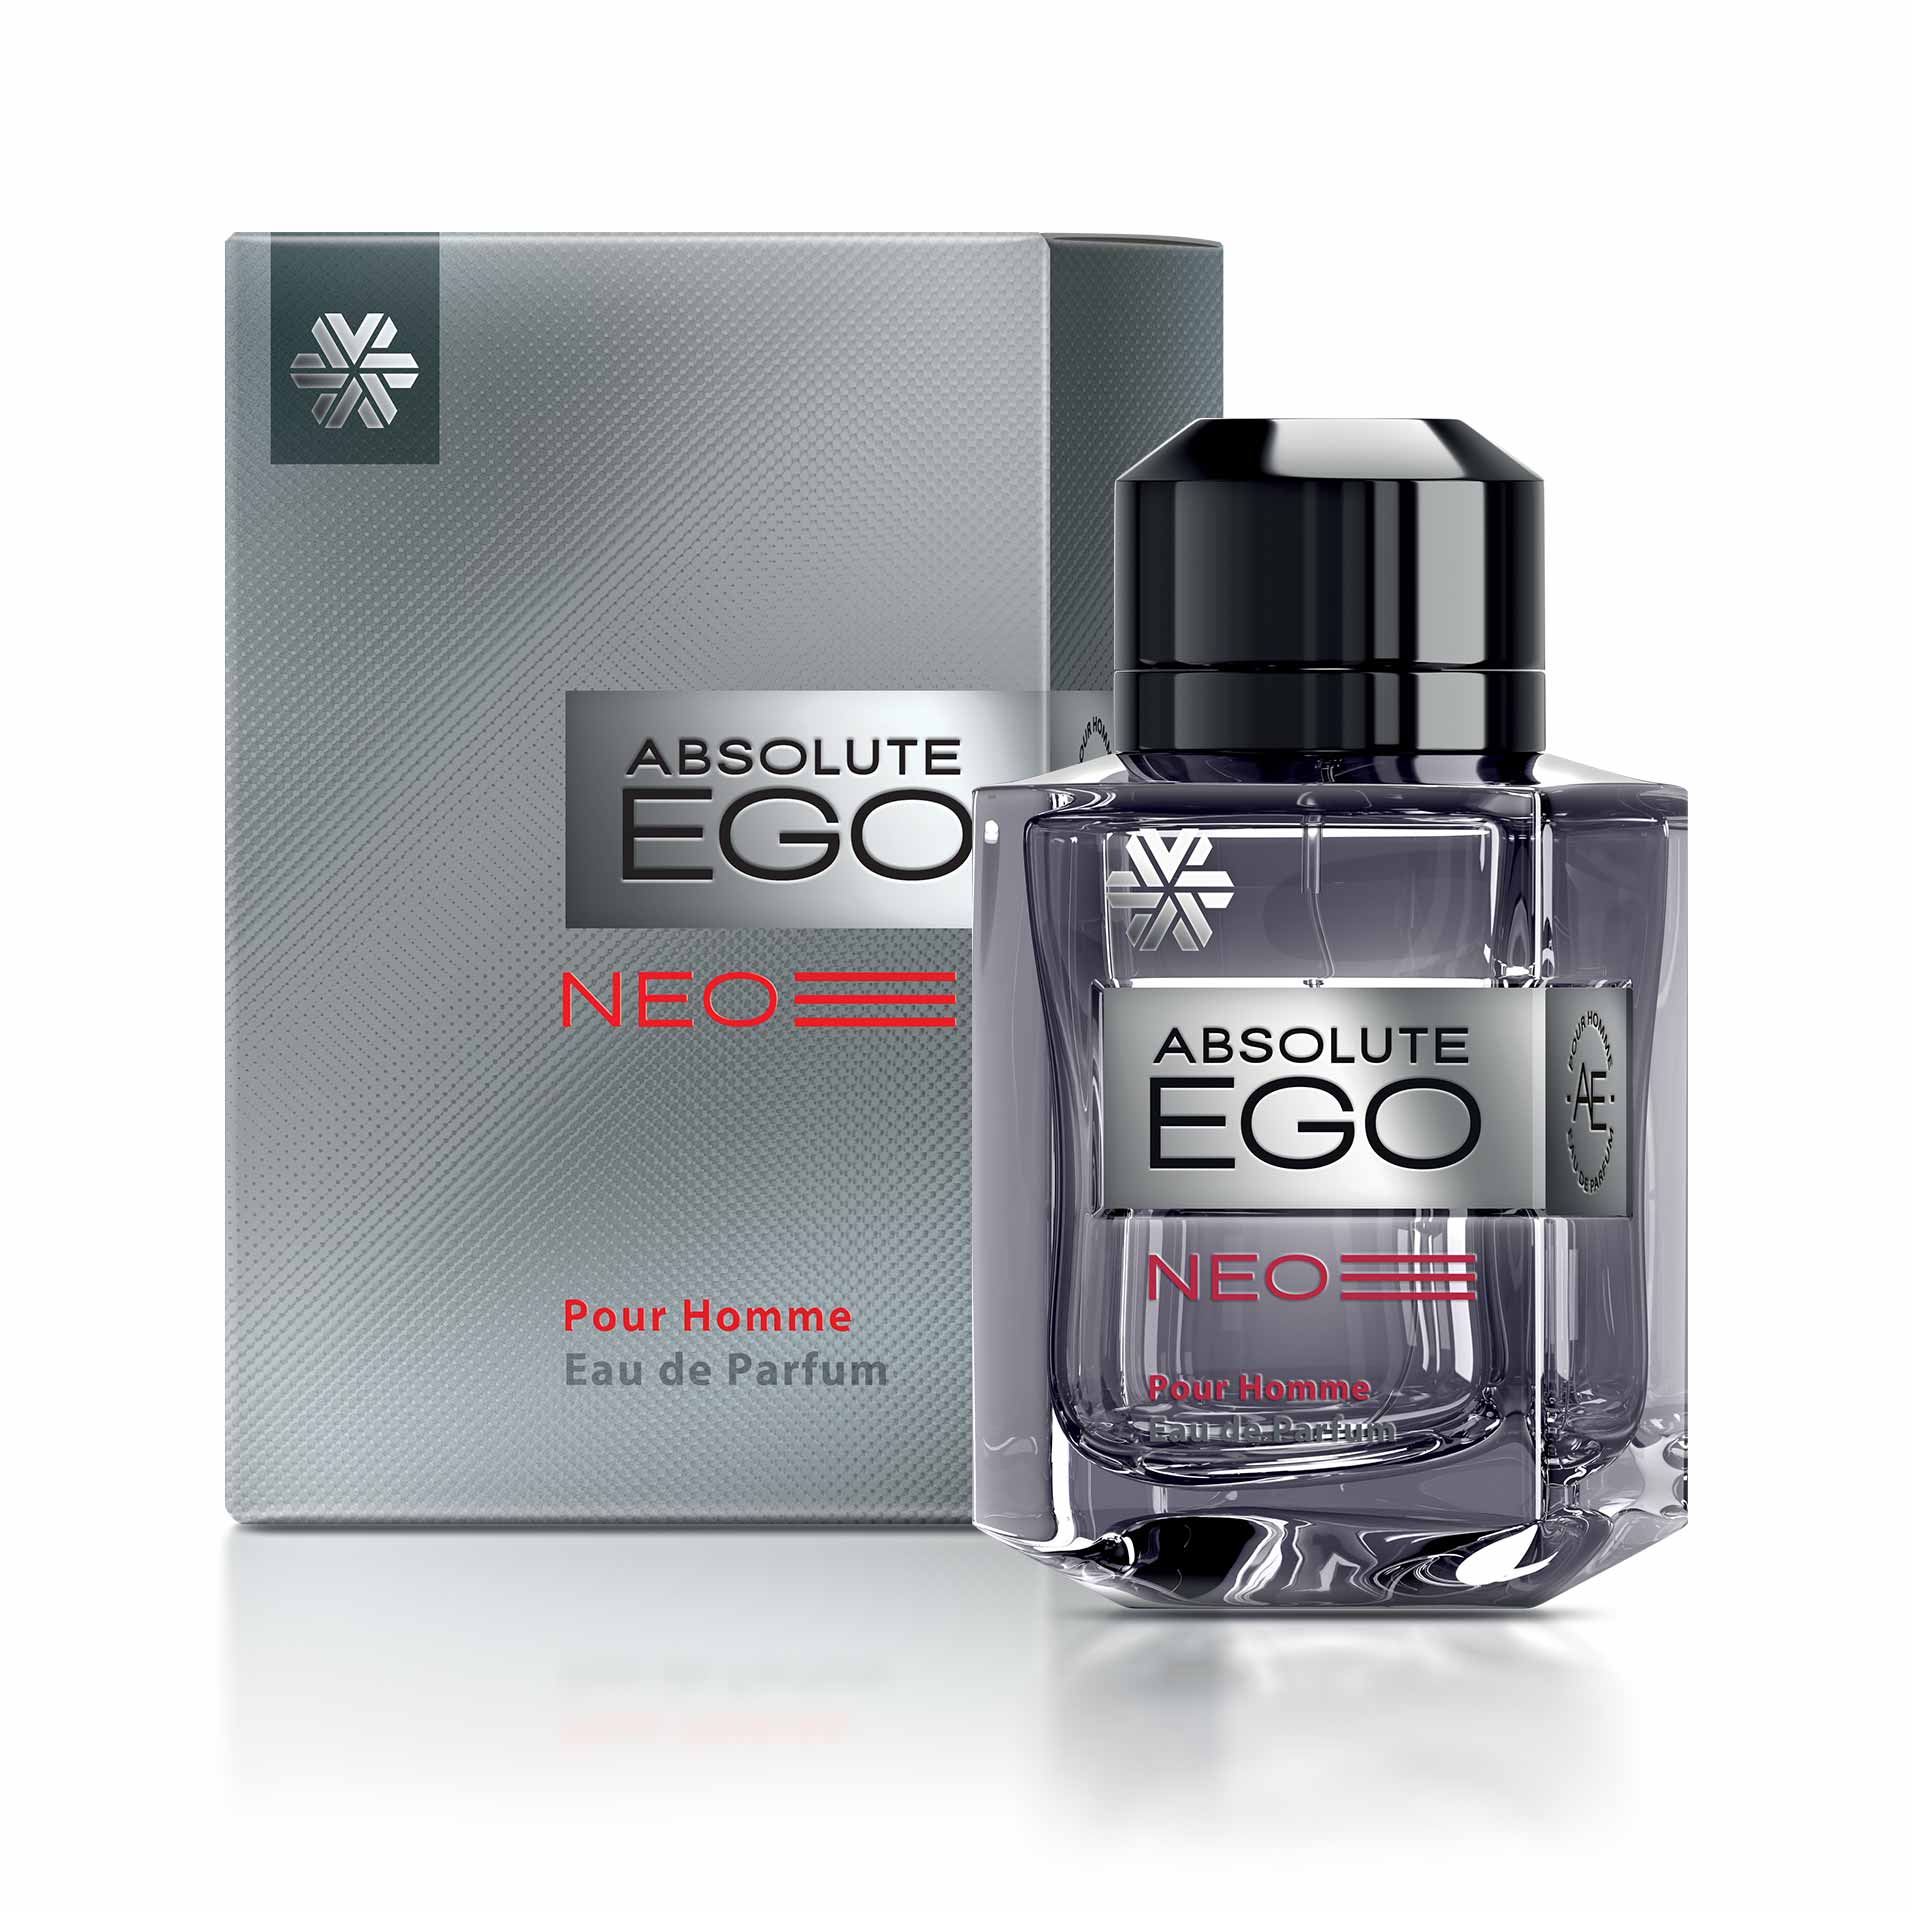 Изображение отсутствует.
			Купить Absolute Ego Neo, парфюмерная вода для мужчин - Коллекция ароматов Ciel  //  // 